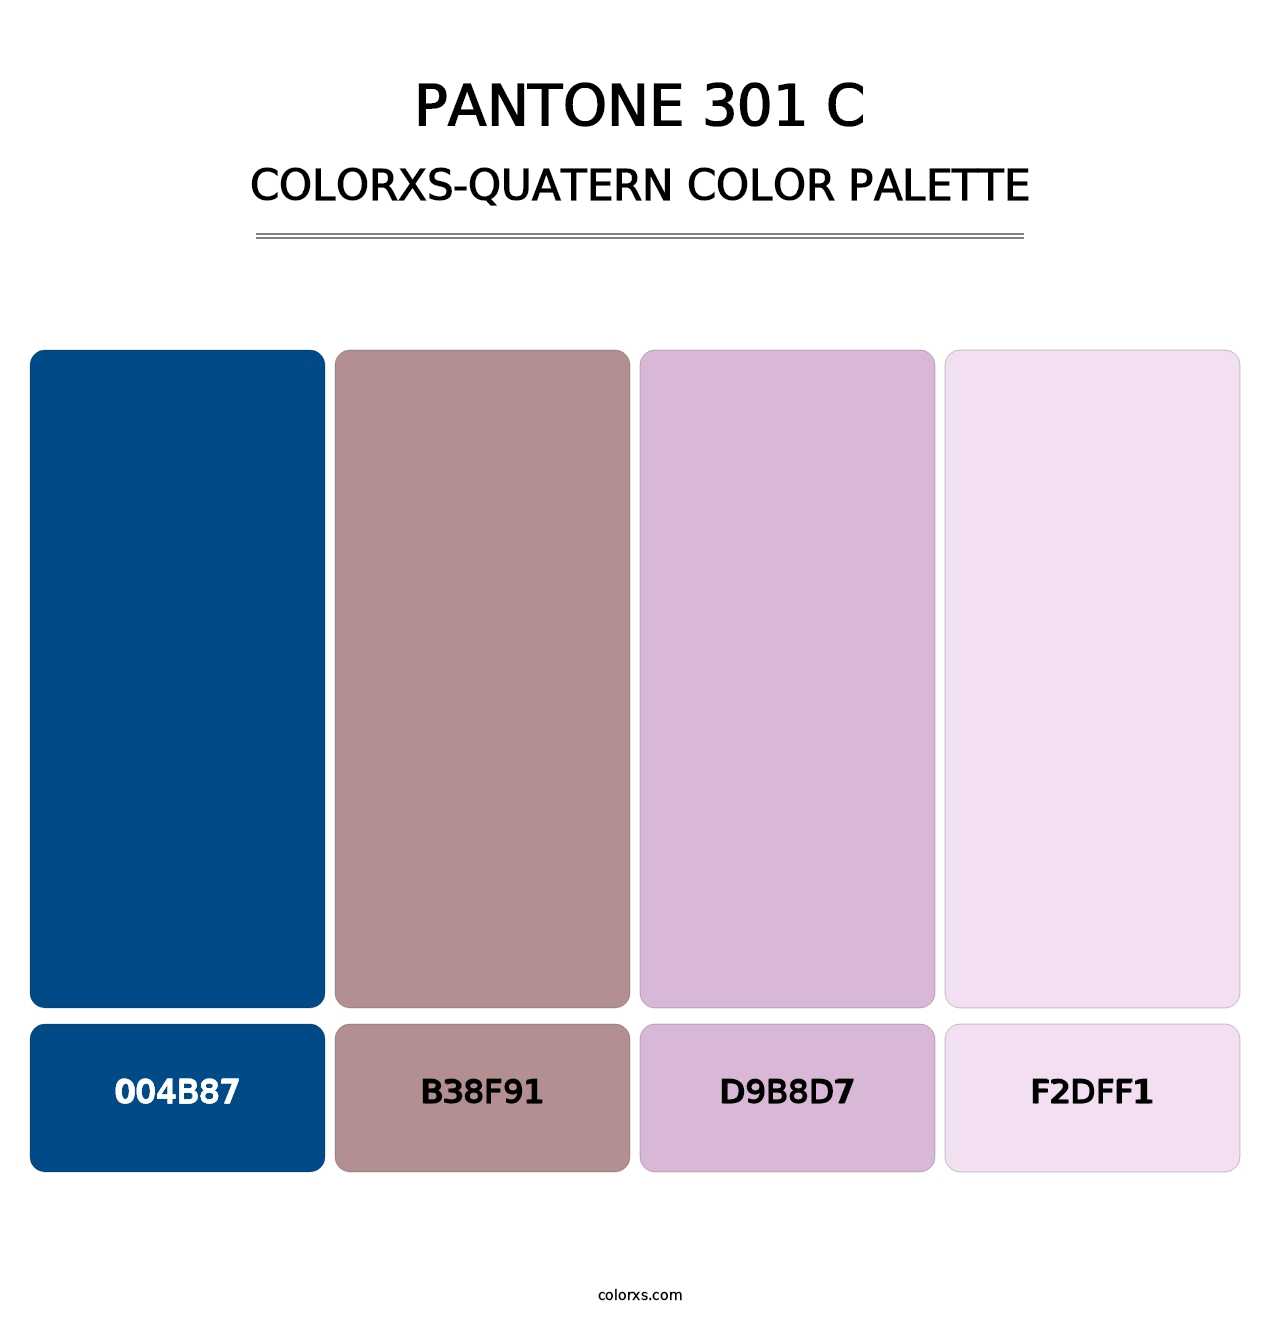 PANTONE 301 C - Colorxs Quatern Palette